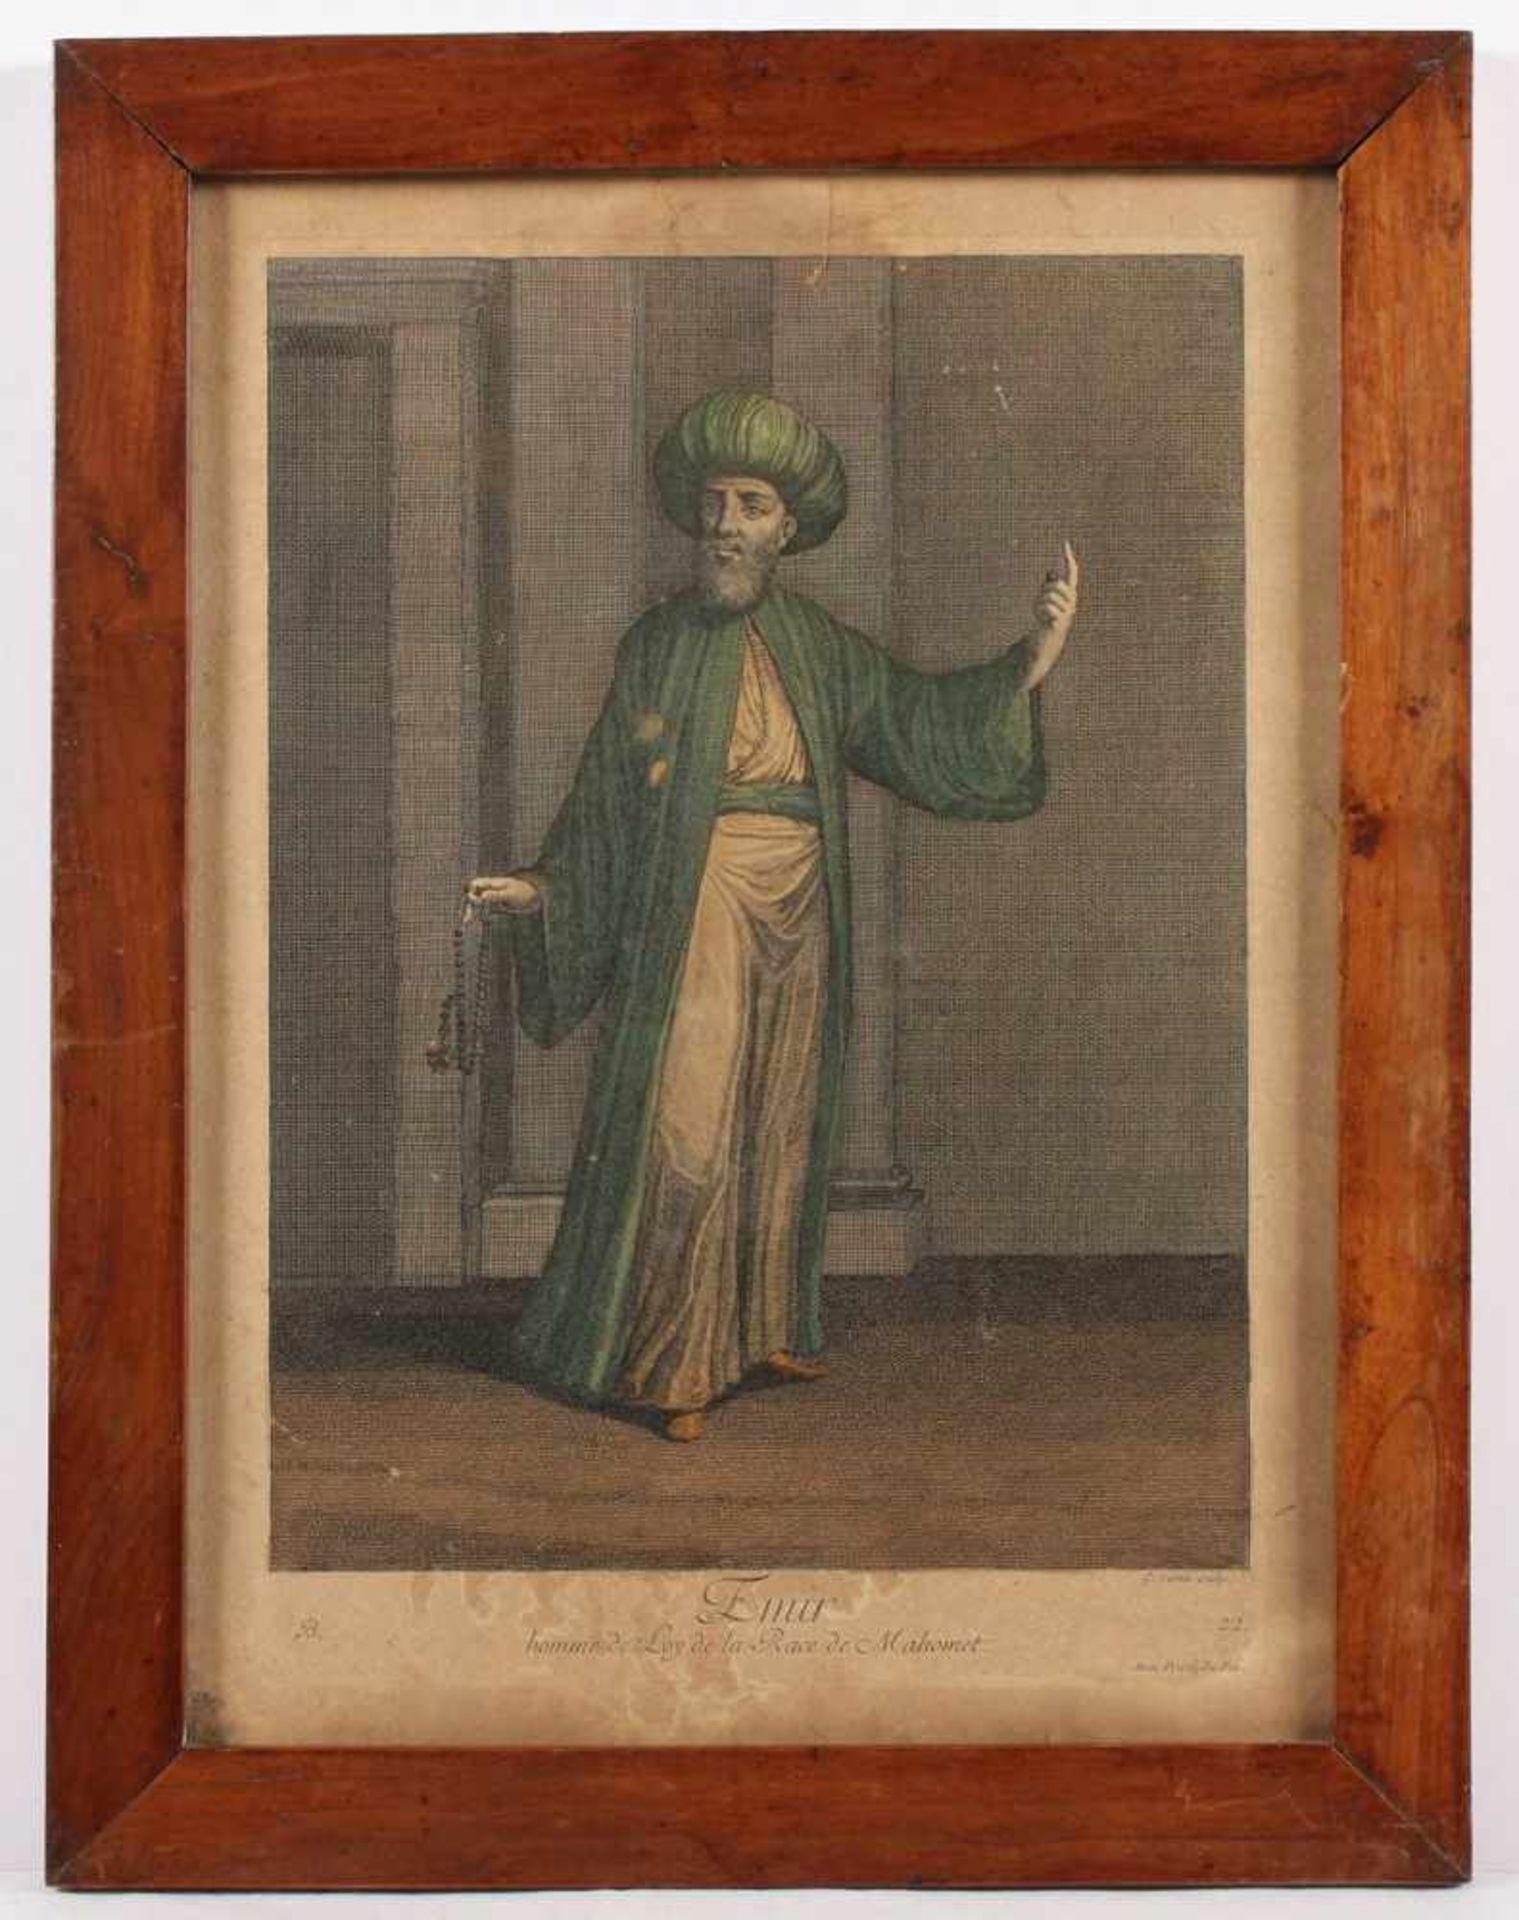 LE HAY, "Emir, homme de Loy de la Race de Mahomet", kolorierter Kupferstich, 33,5 x 24, bei Le Hay